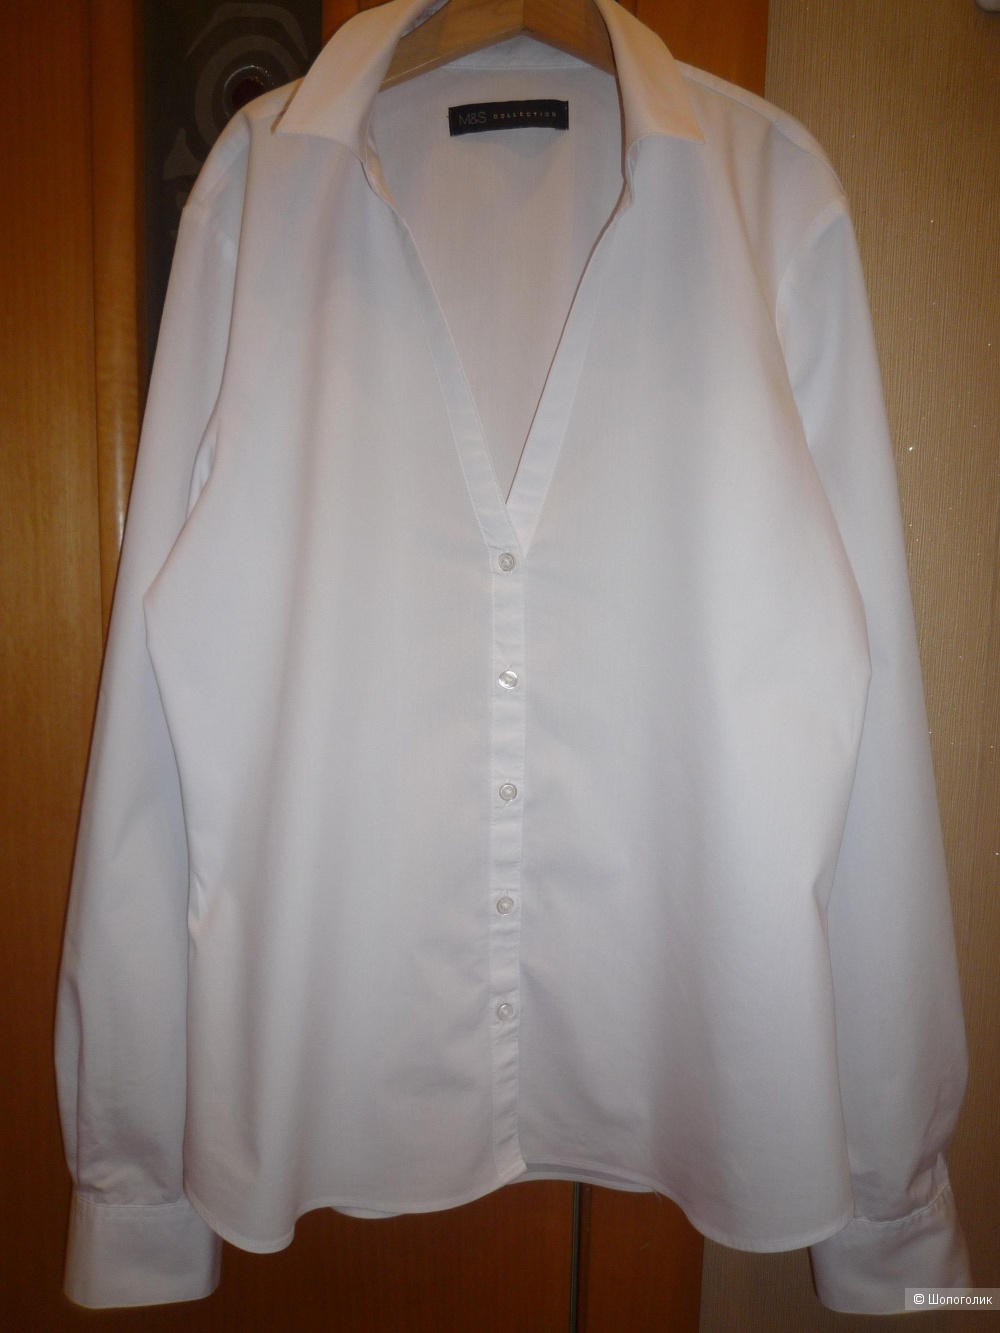 Рубашка белая M&S Collection 42-44 размер